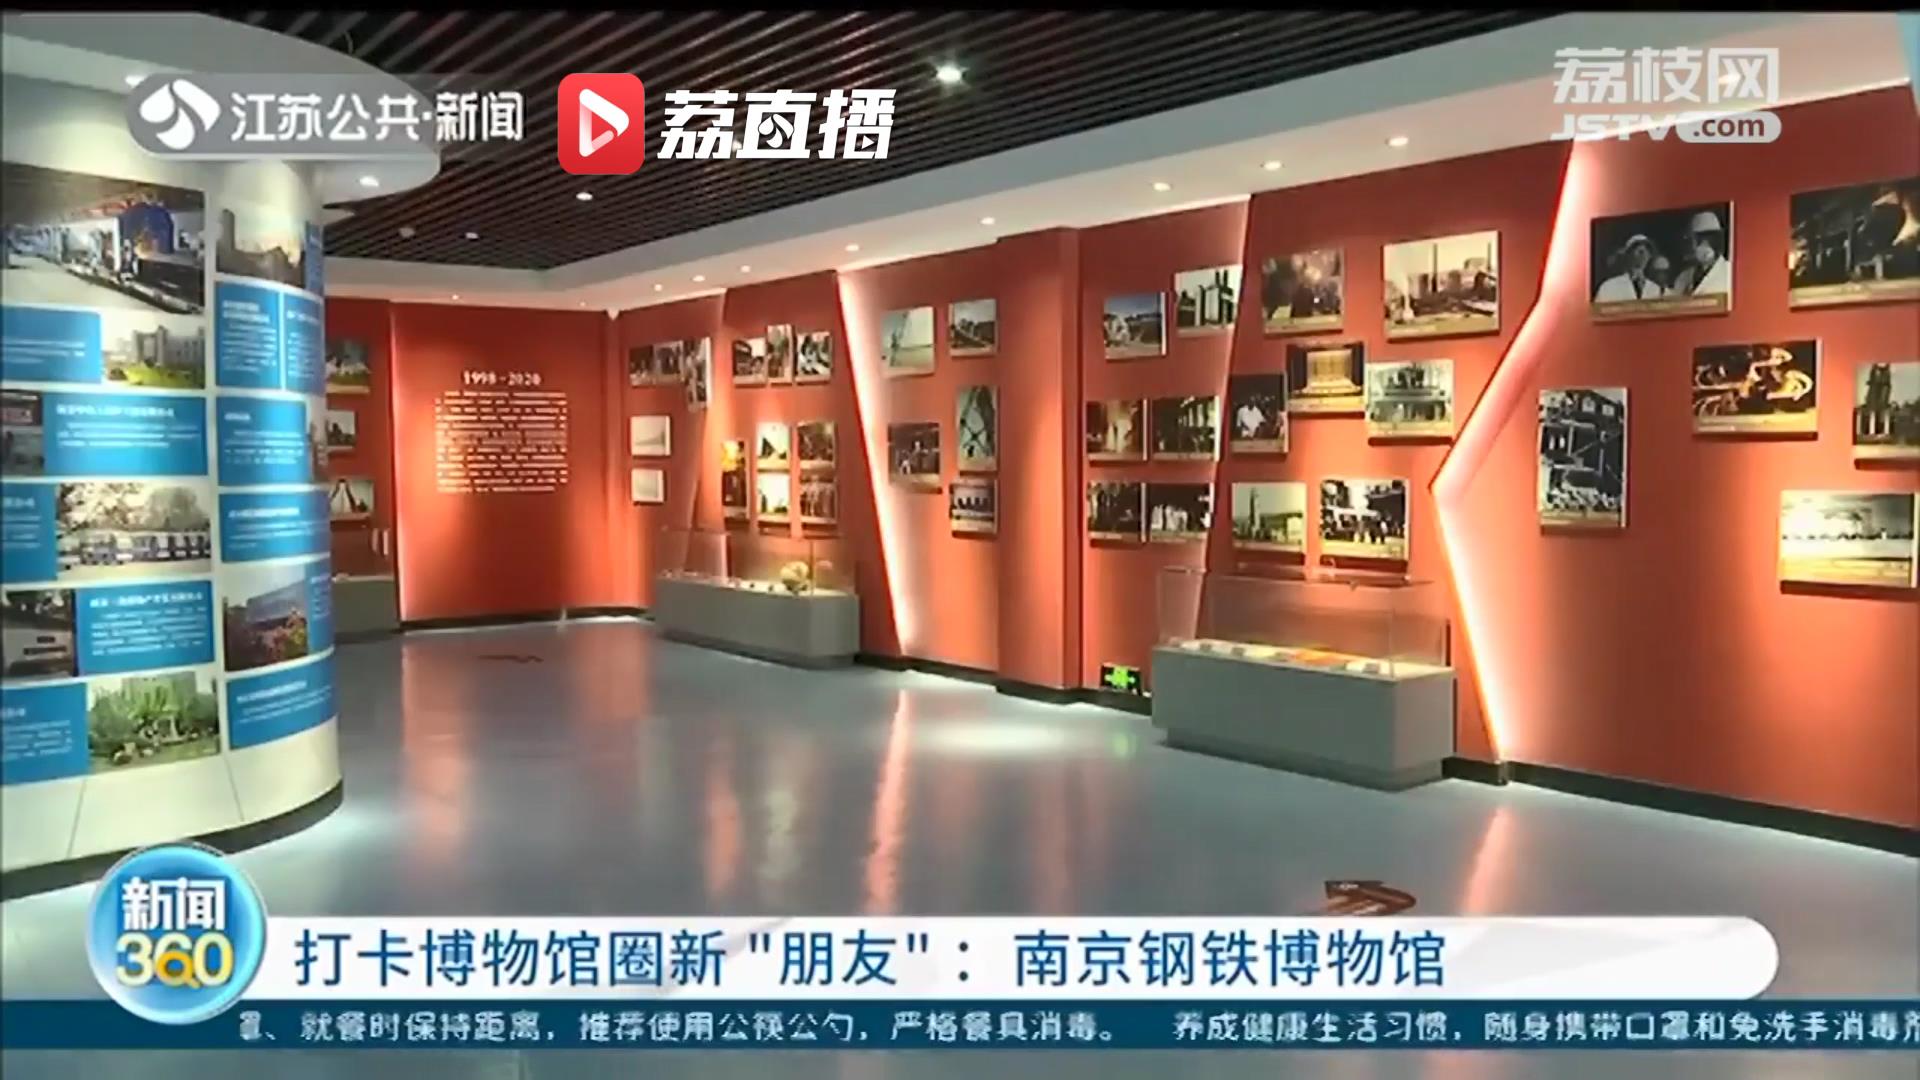 「打卡博物馆圈新“朋友”」南京钢铁博物馆